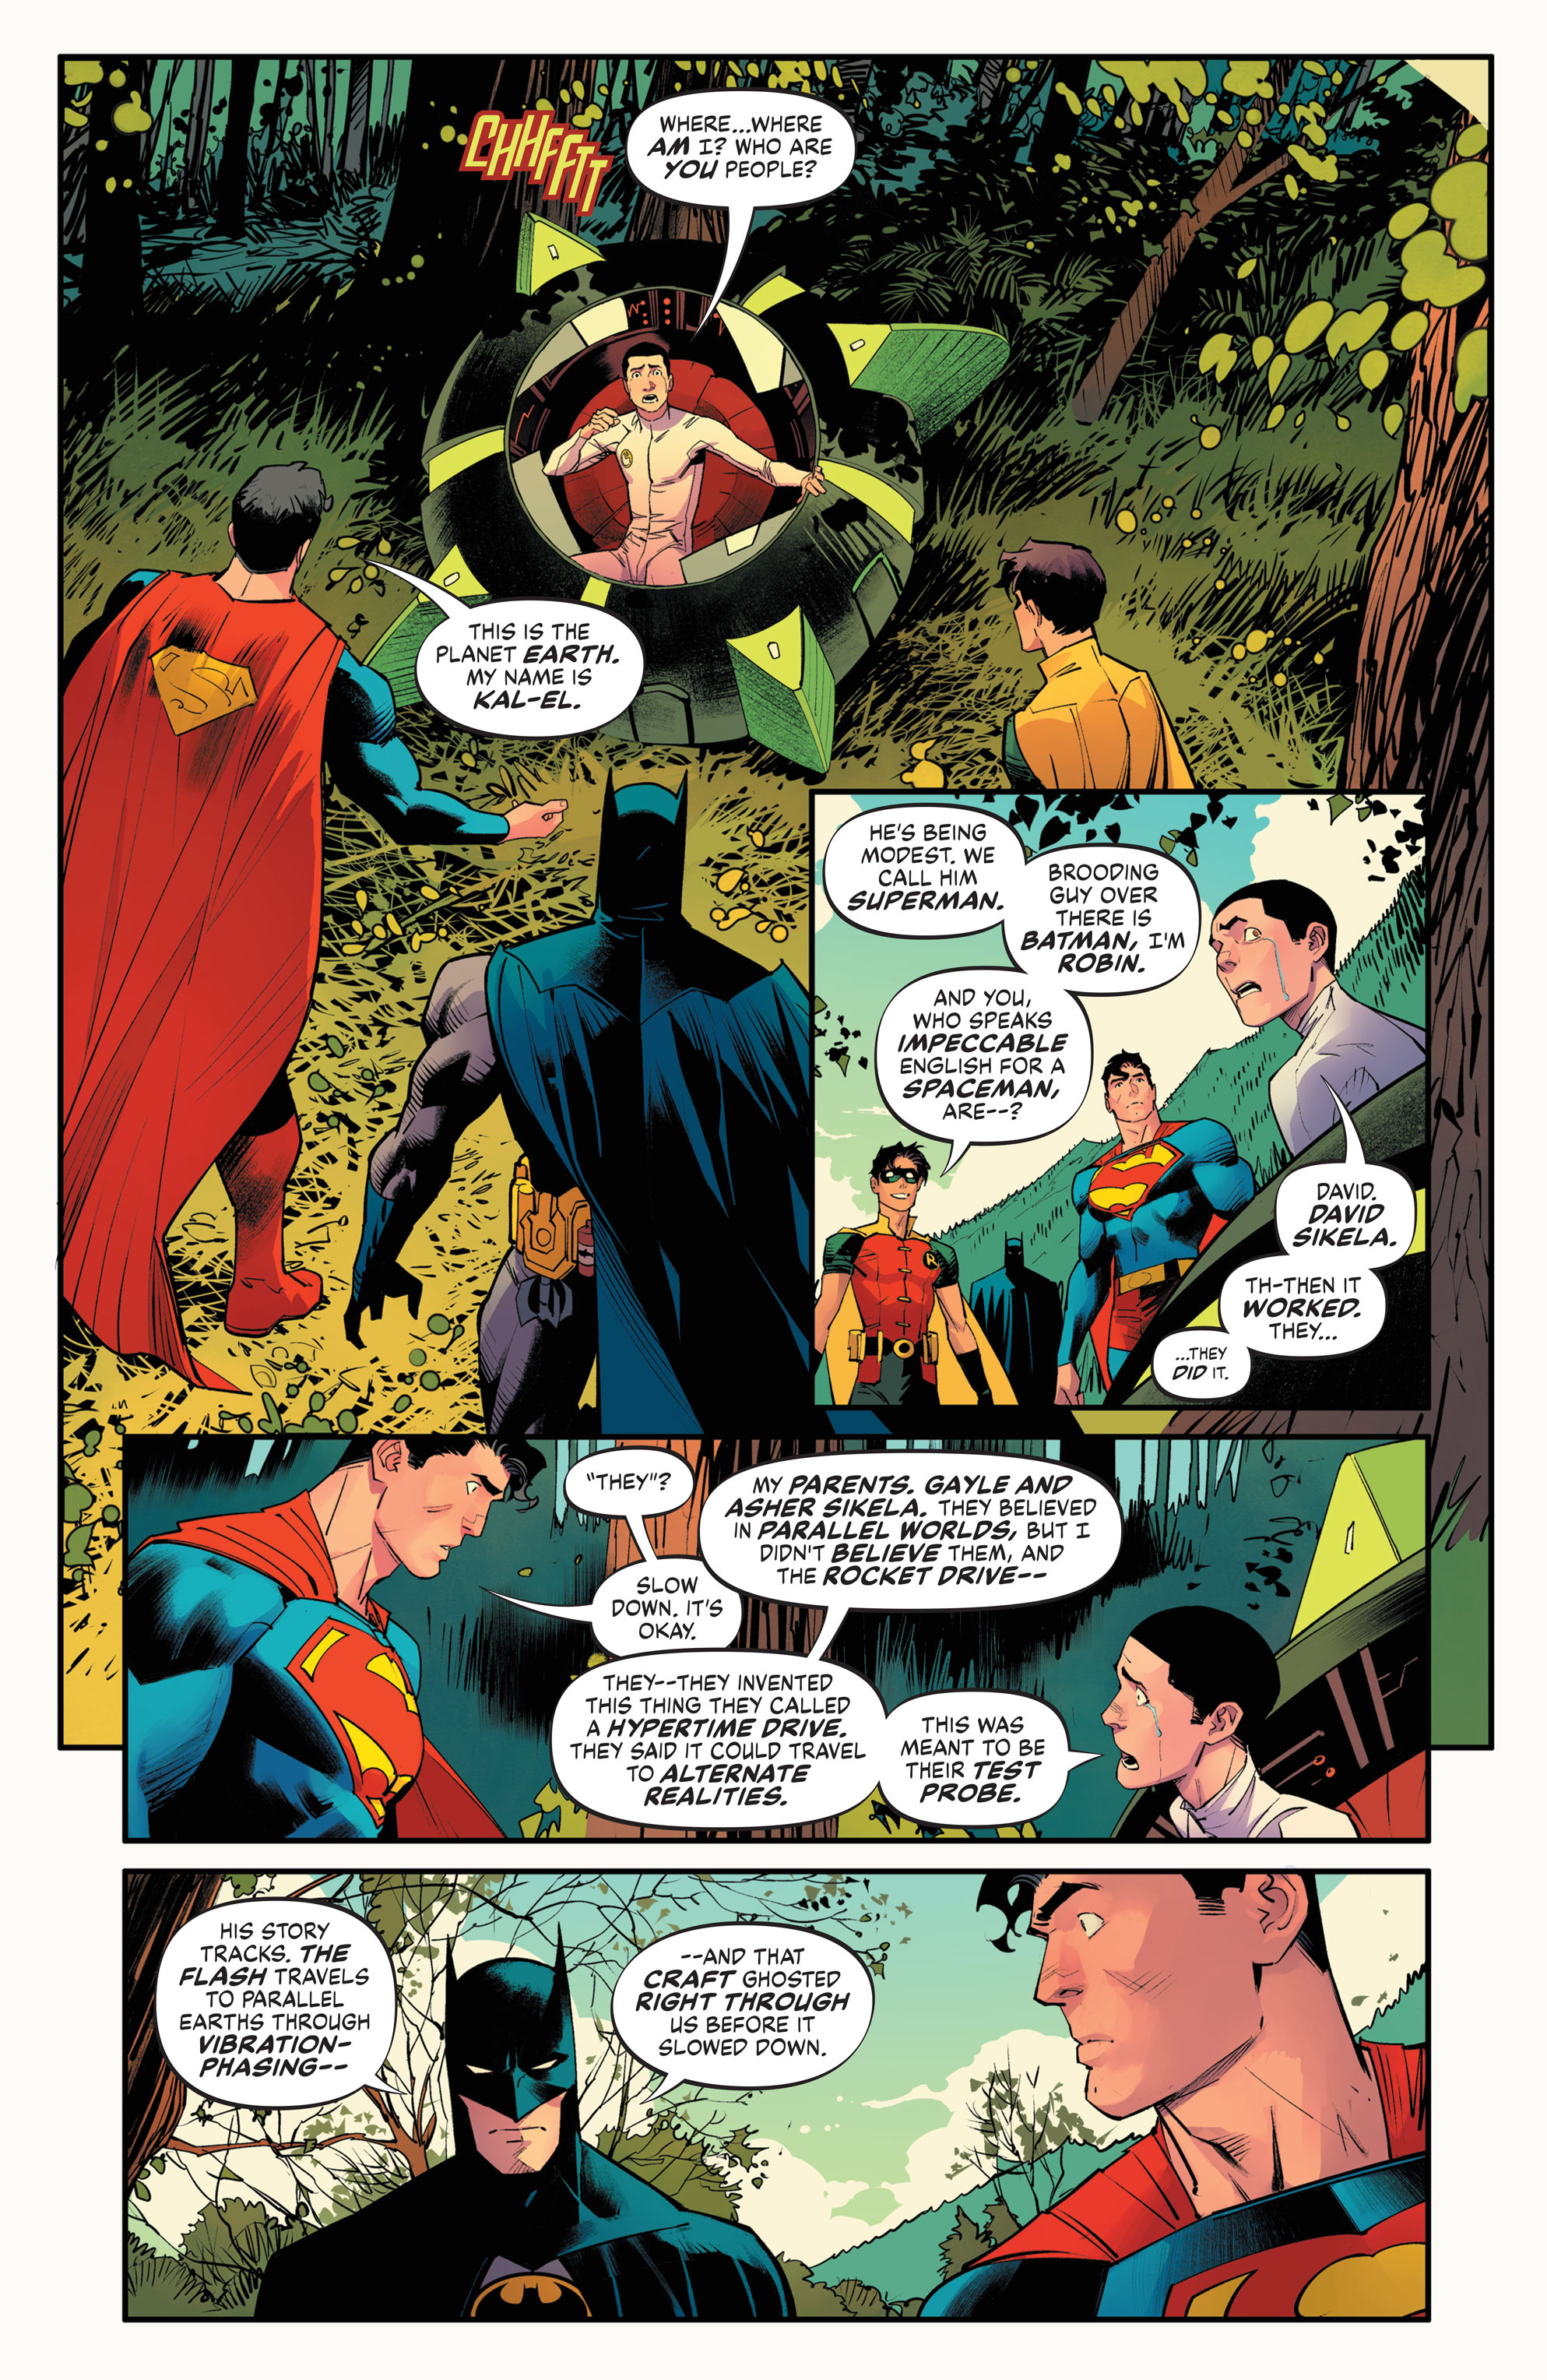 Weird Science DC Comics: Batman / Superman: World's Finest #7 Review